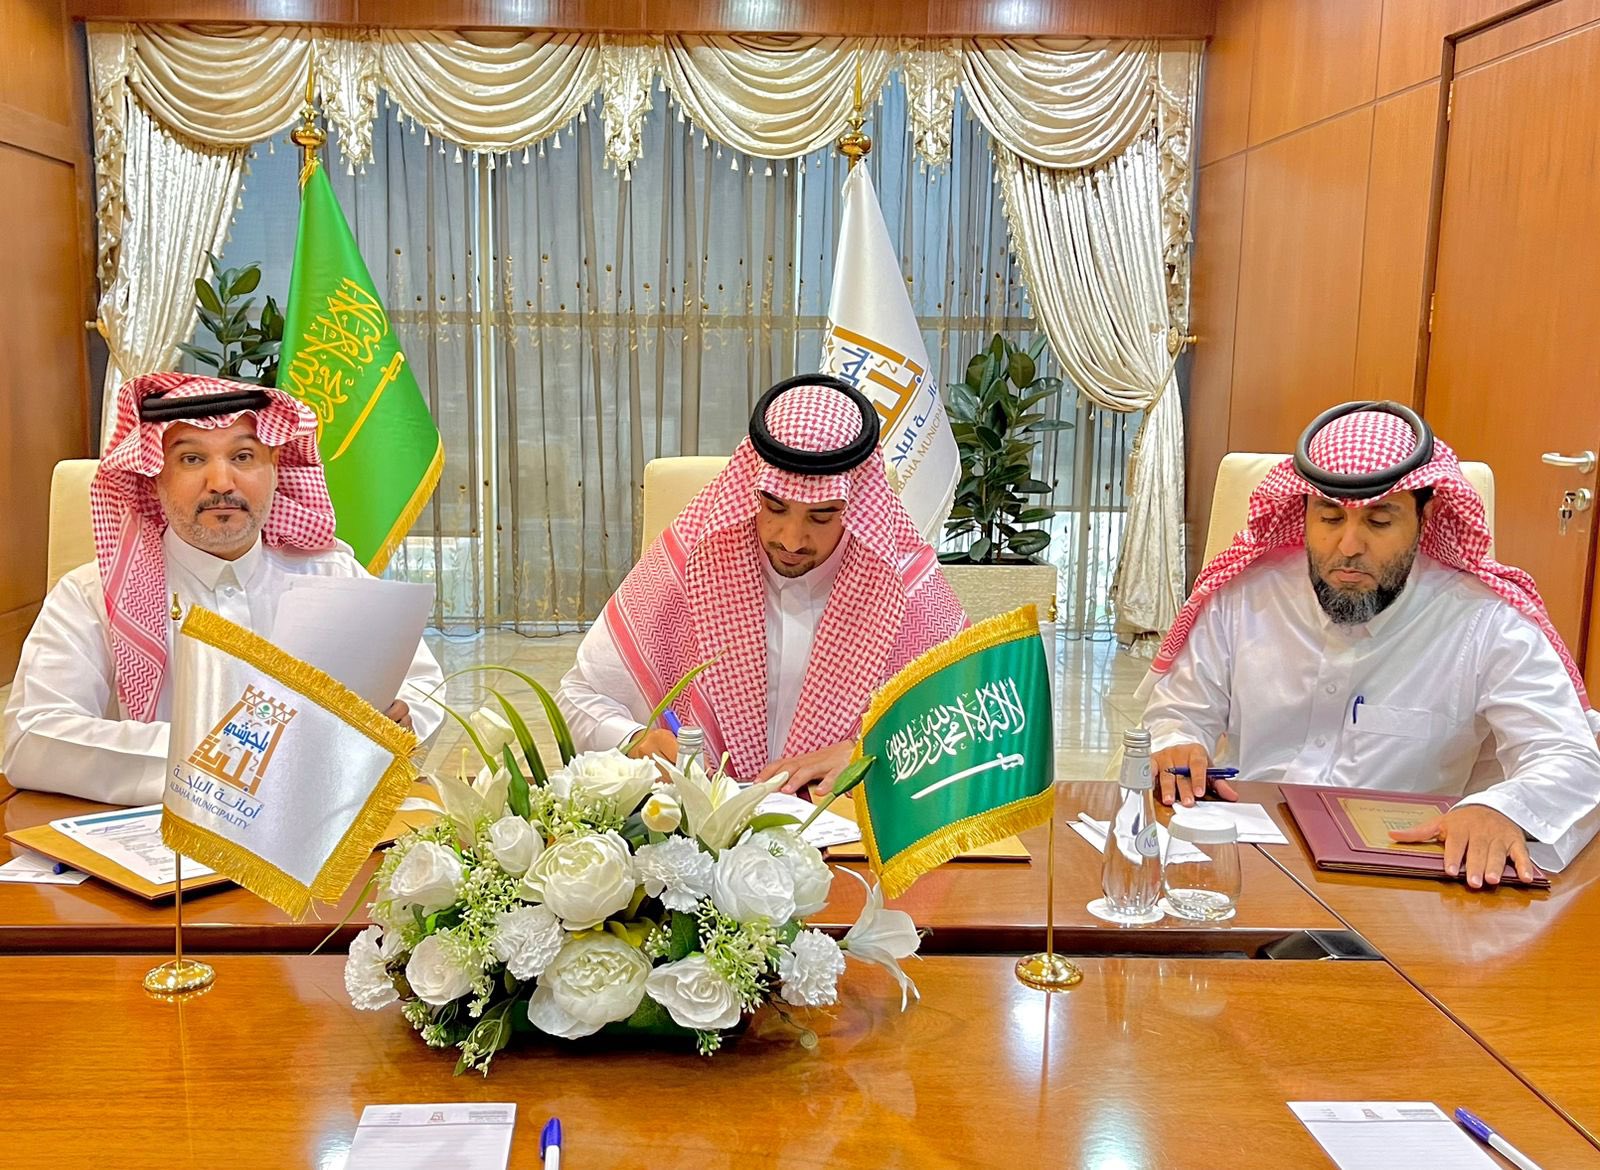 وقع سعادة رئيس بلدية بلجرشي م/محمد بن عبدالوهاب الصعيري عقد انشاء وتشغيل نشاط تجاري سكني